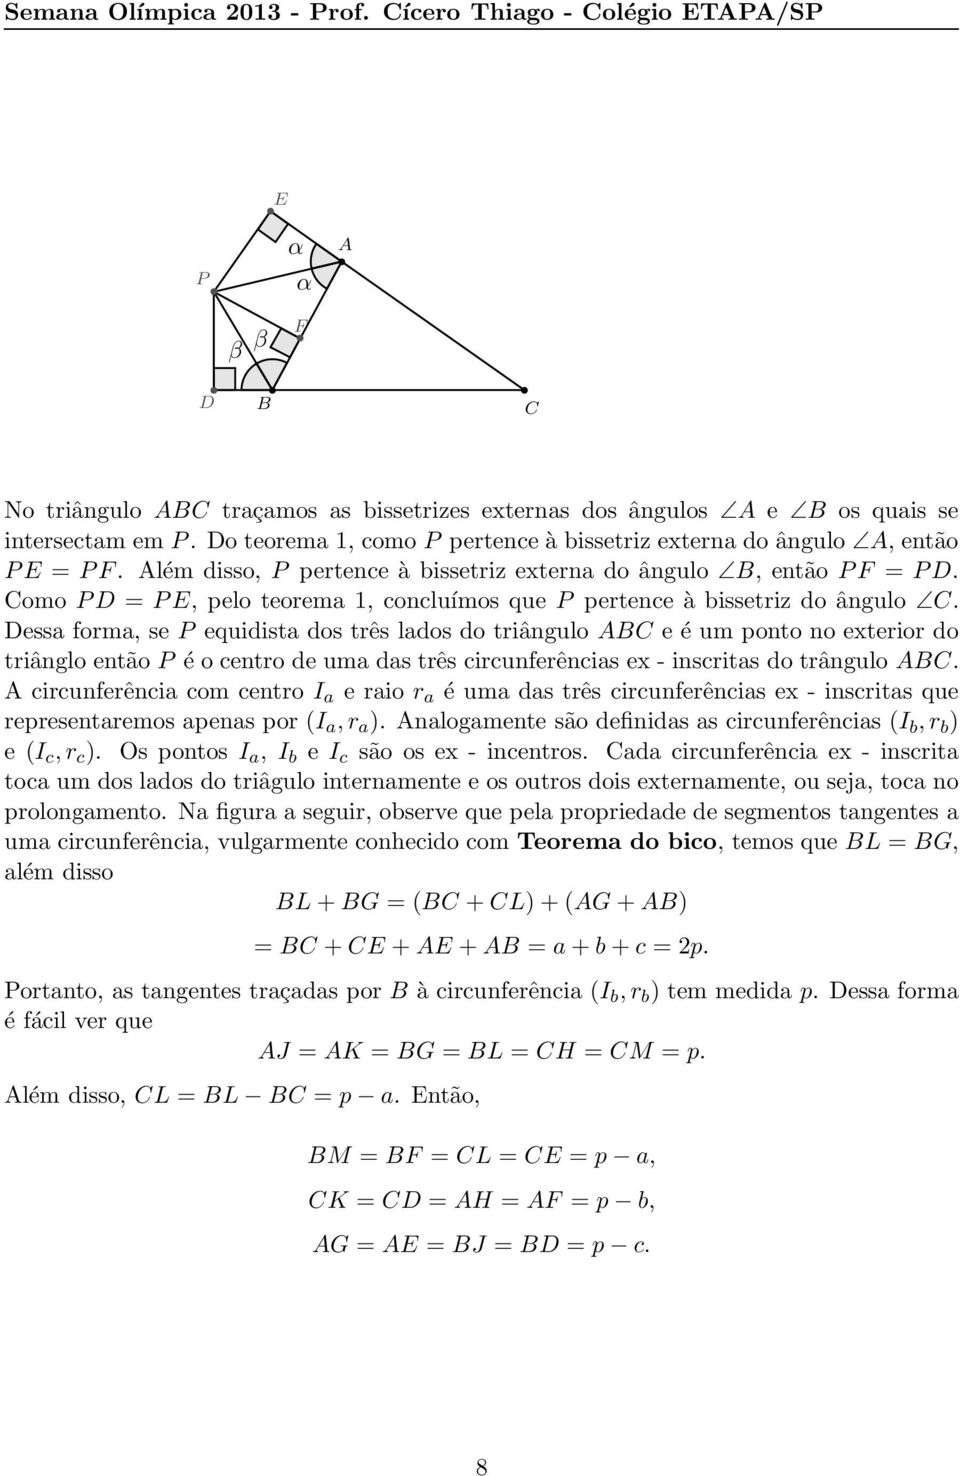 omo PD = PE, pelo teorema 1, concluímos que P pertence à bissetriz do ângulo.